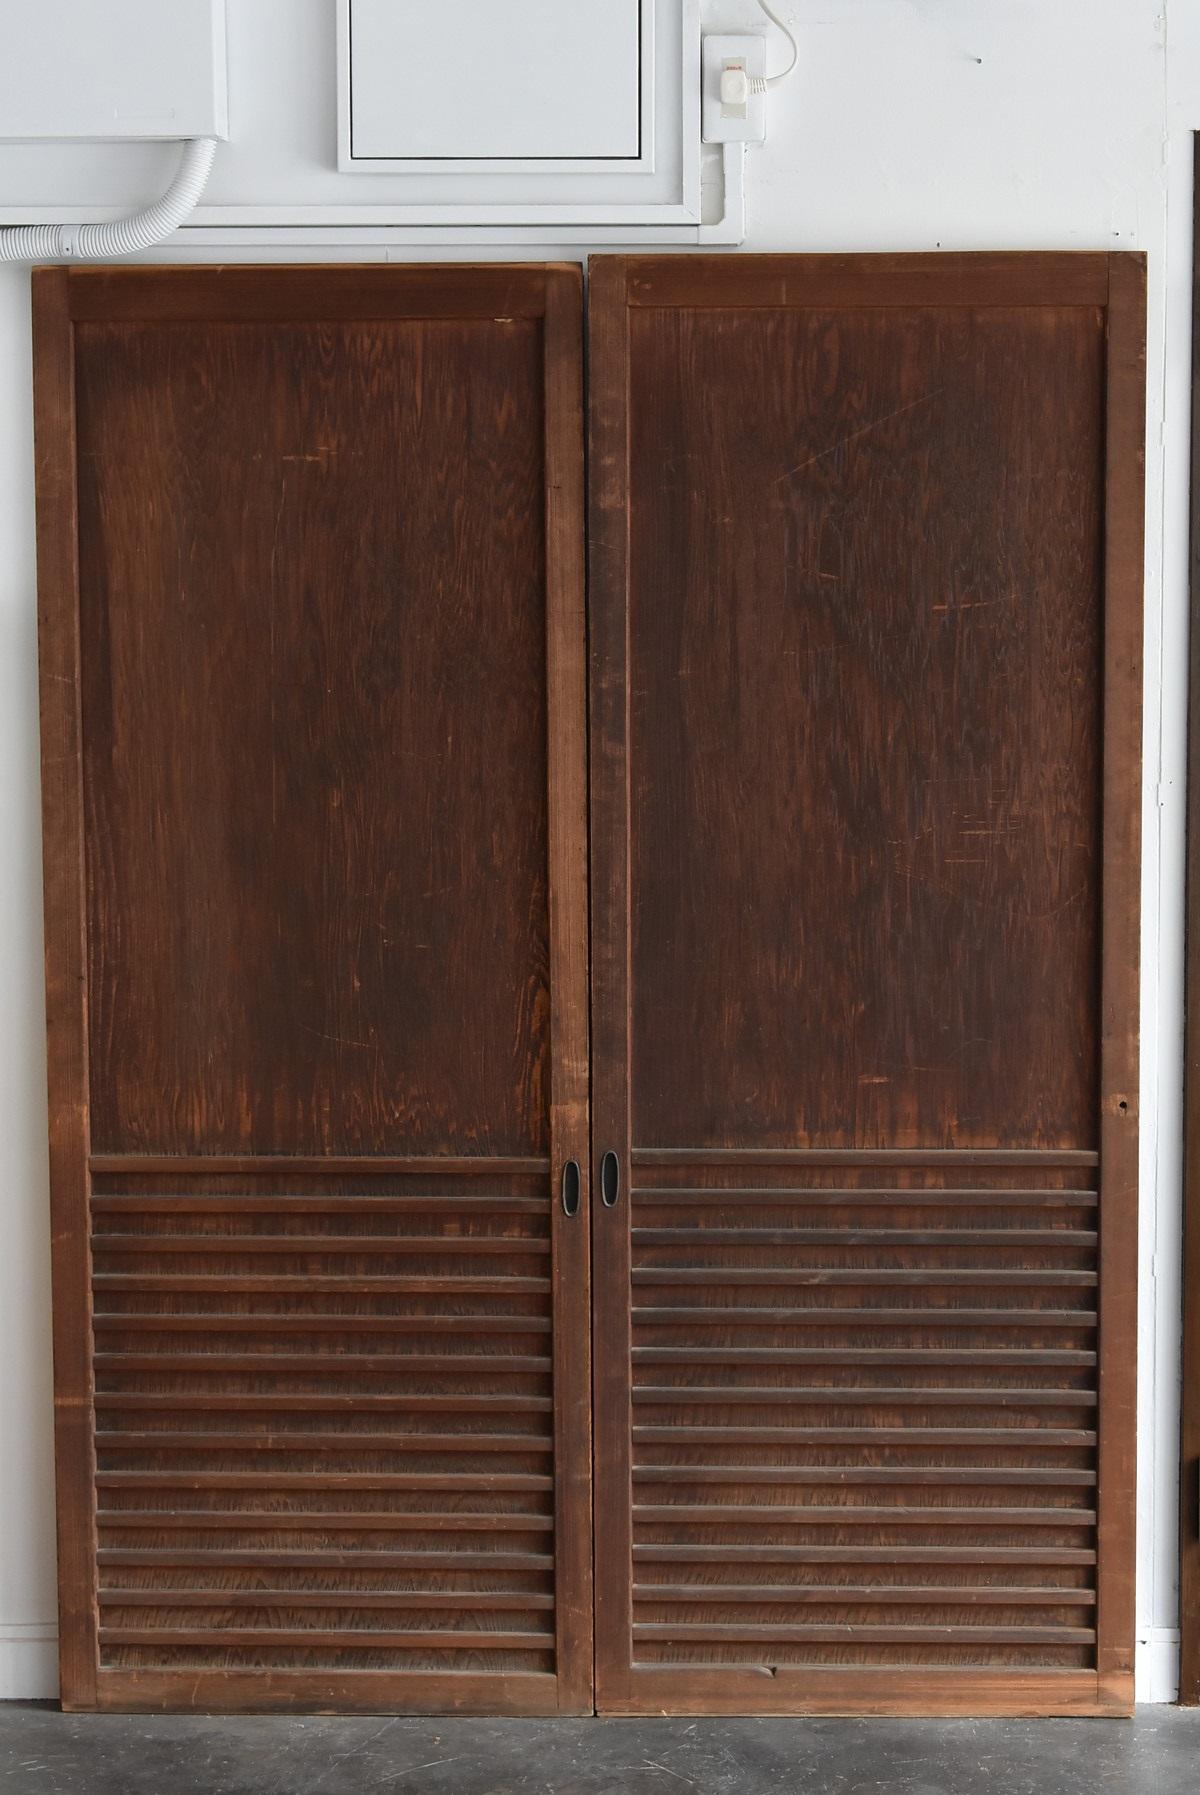 Japanese Antique Sliding Door / Wooden Door with Birds / Painting / Partition 9